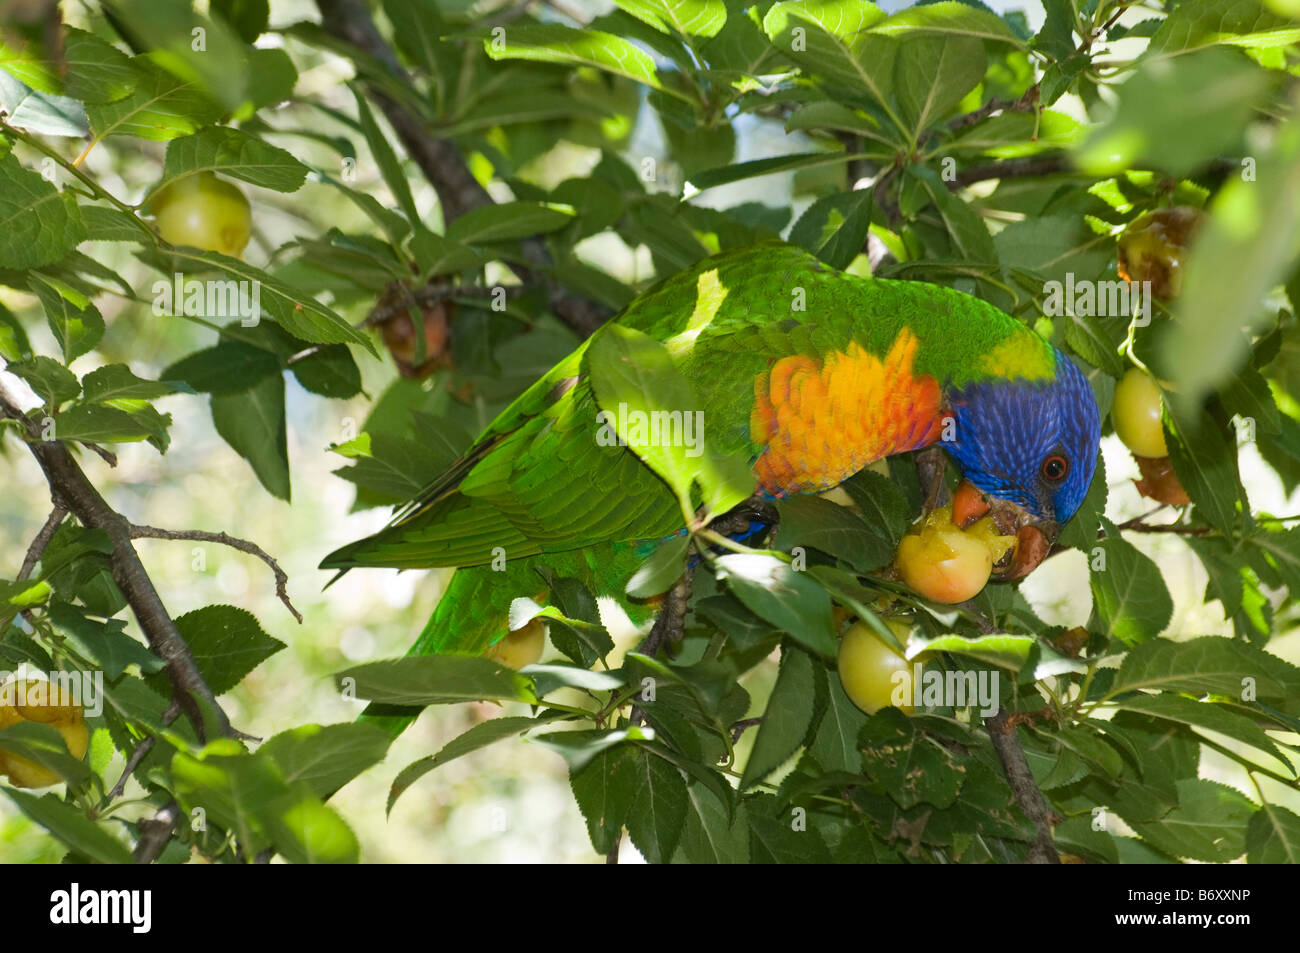 A rainbow lorikeet feeding on fruit Stock Photo